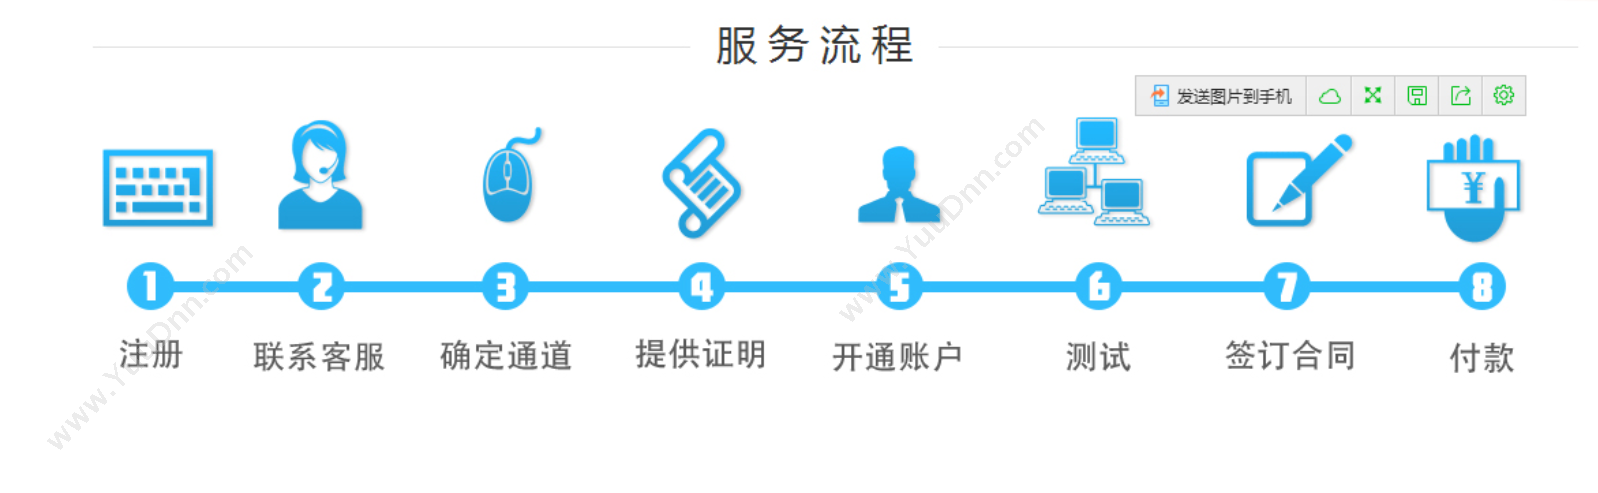 广州亿淼信息 亿淼短信平台 营销系统